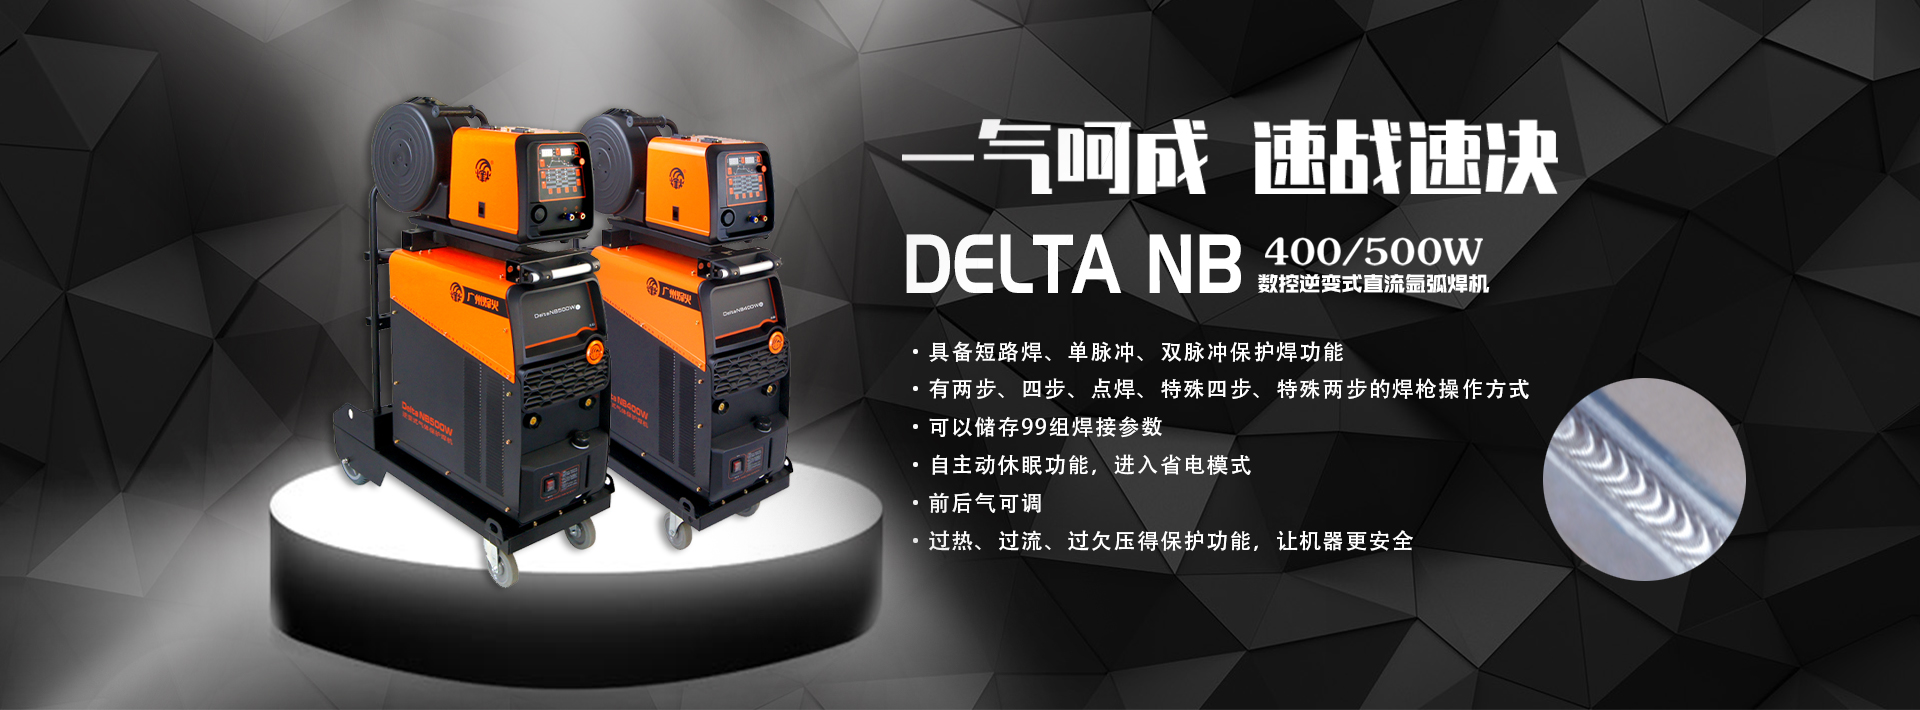 Delta NB400W新.jpg